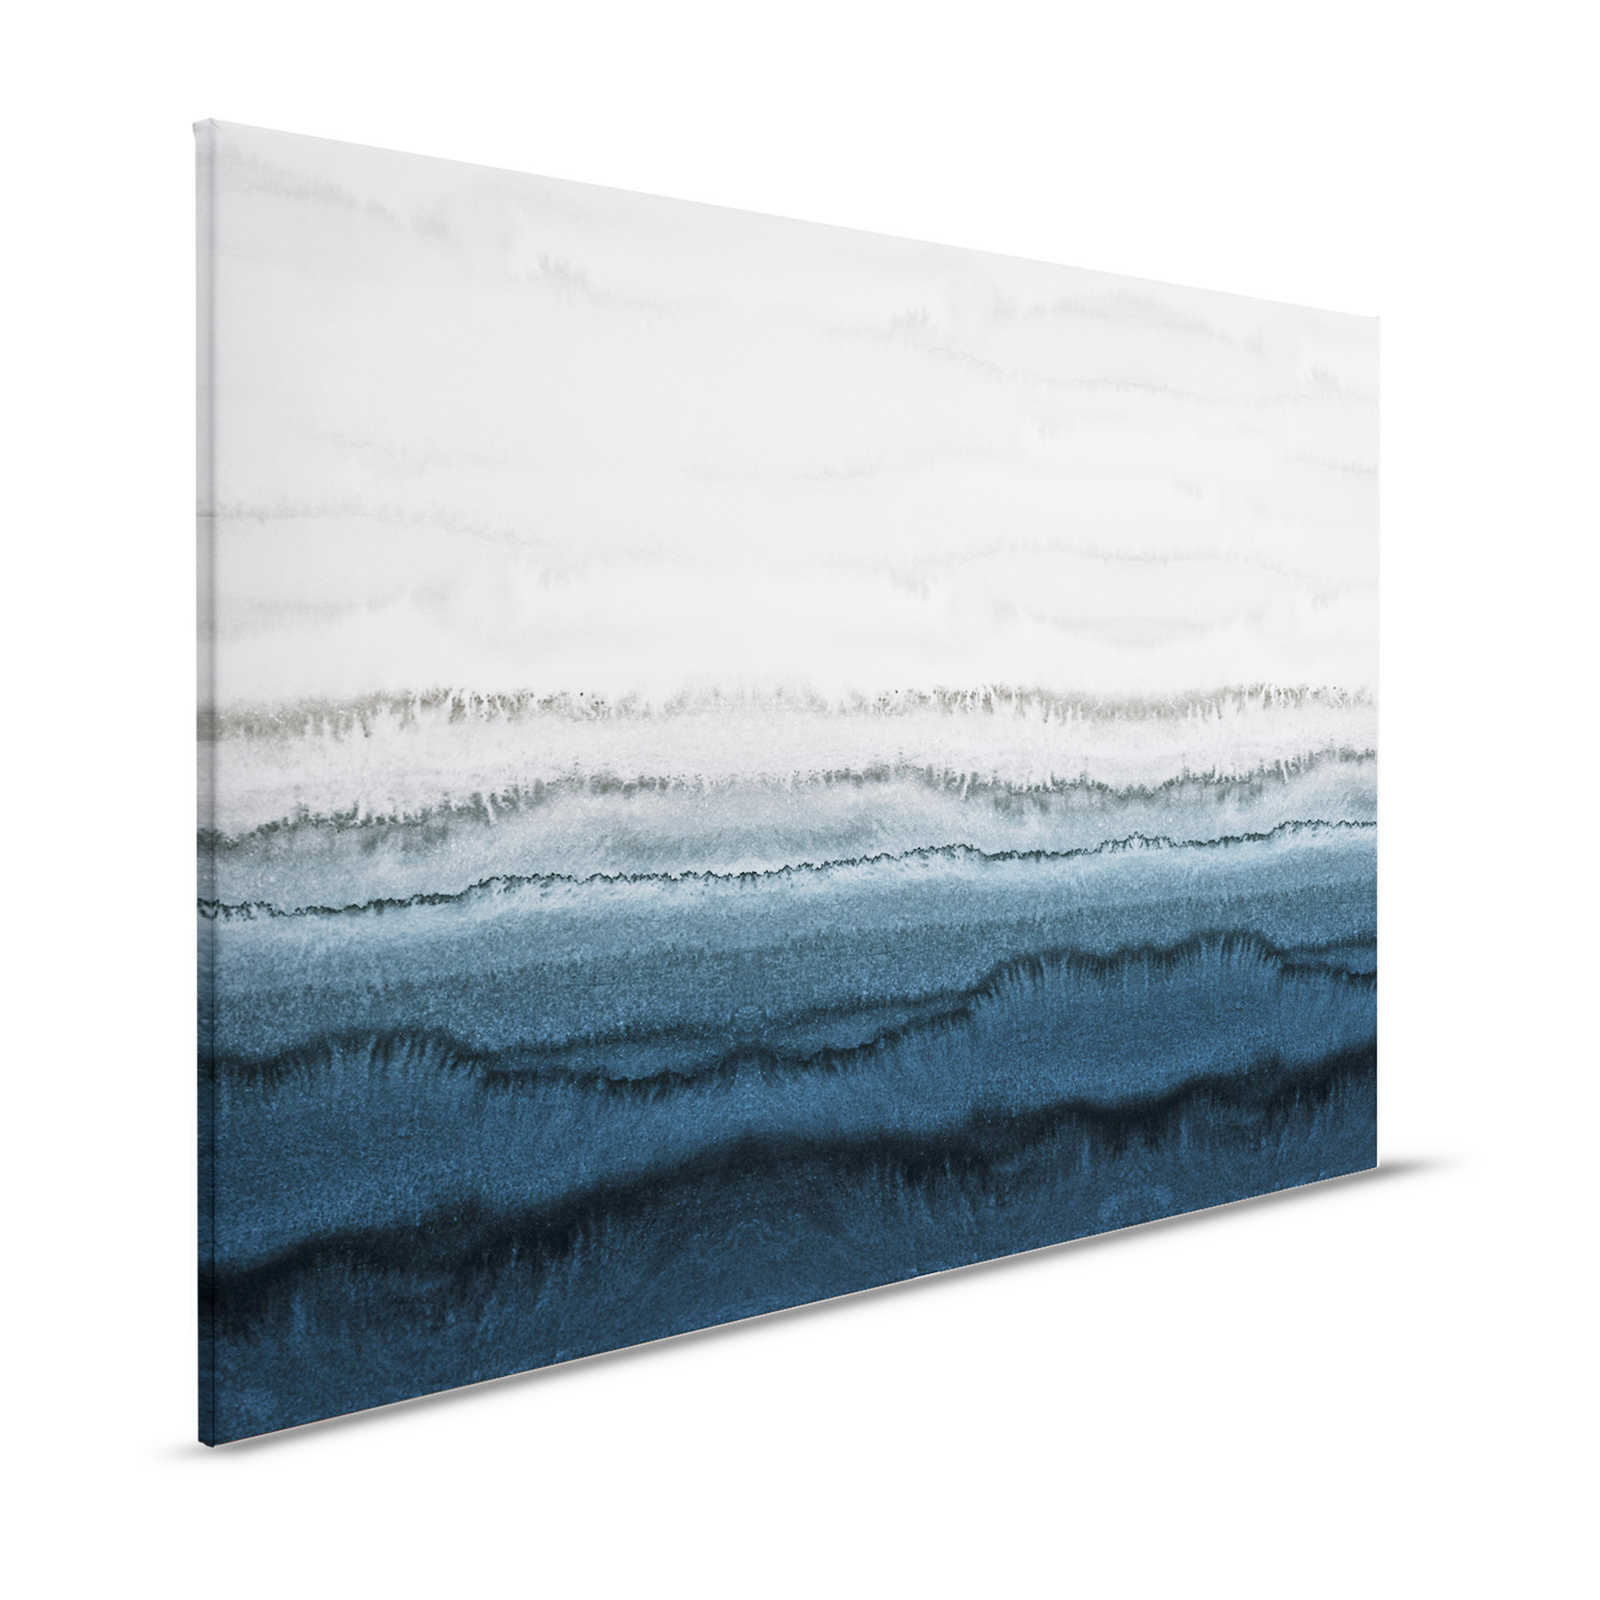 Leinwandbild Gezeiten im minimalistischen Aquarell Stil – 1,20 m x 0,80 m
